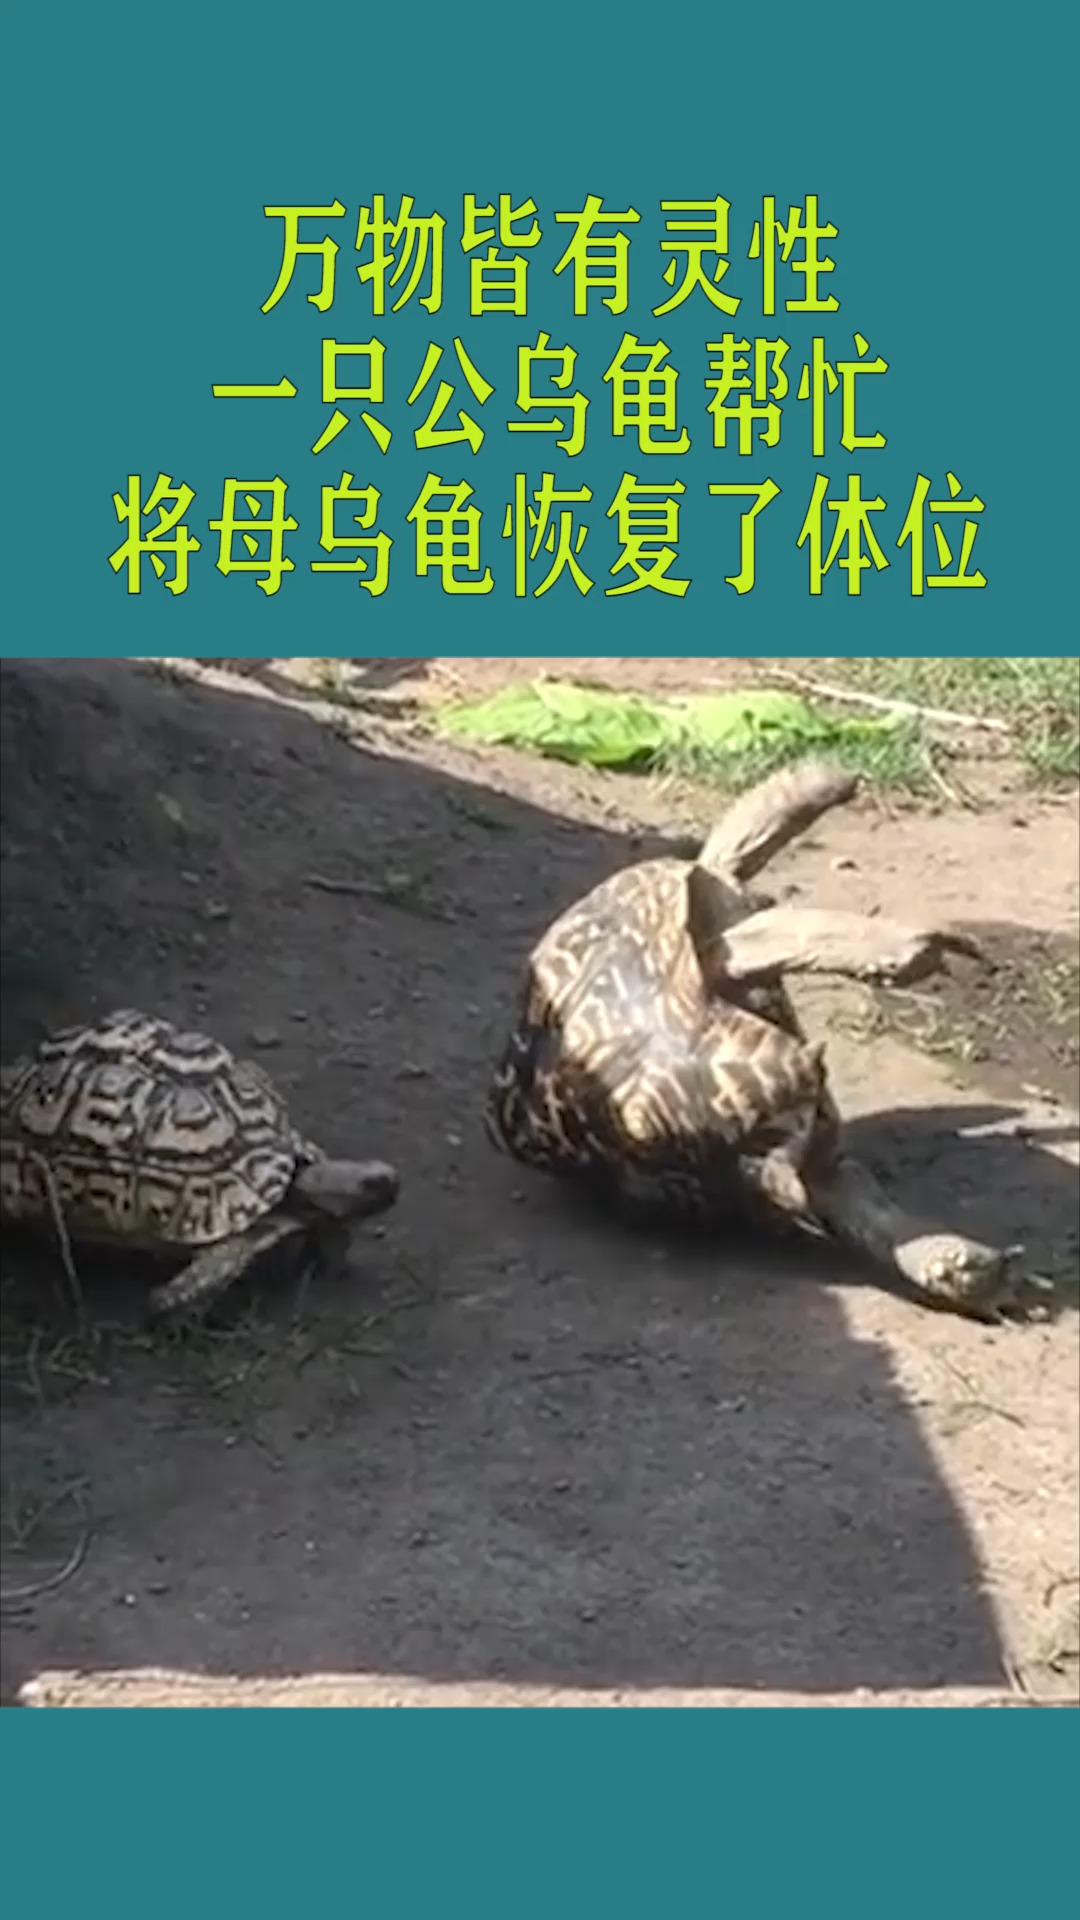 搞笑萌宠#真是万物皆有灵性,一只公乌龟帮忙,将母乌龟恢复了体位!